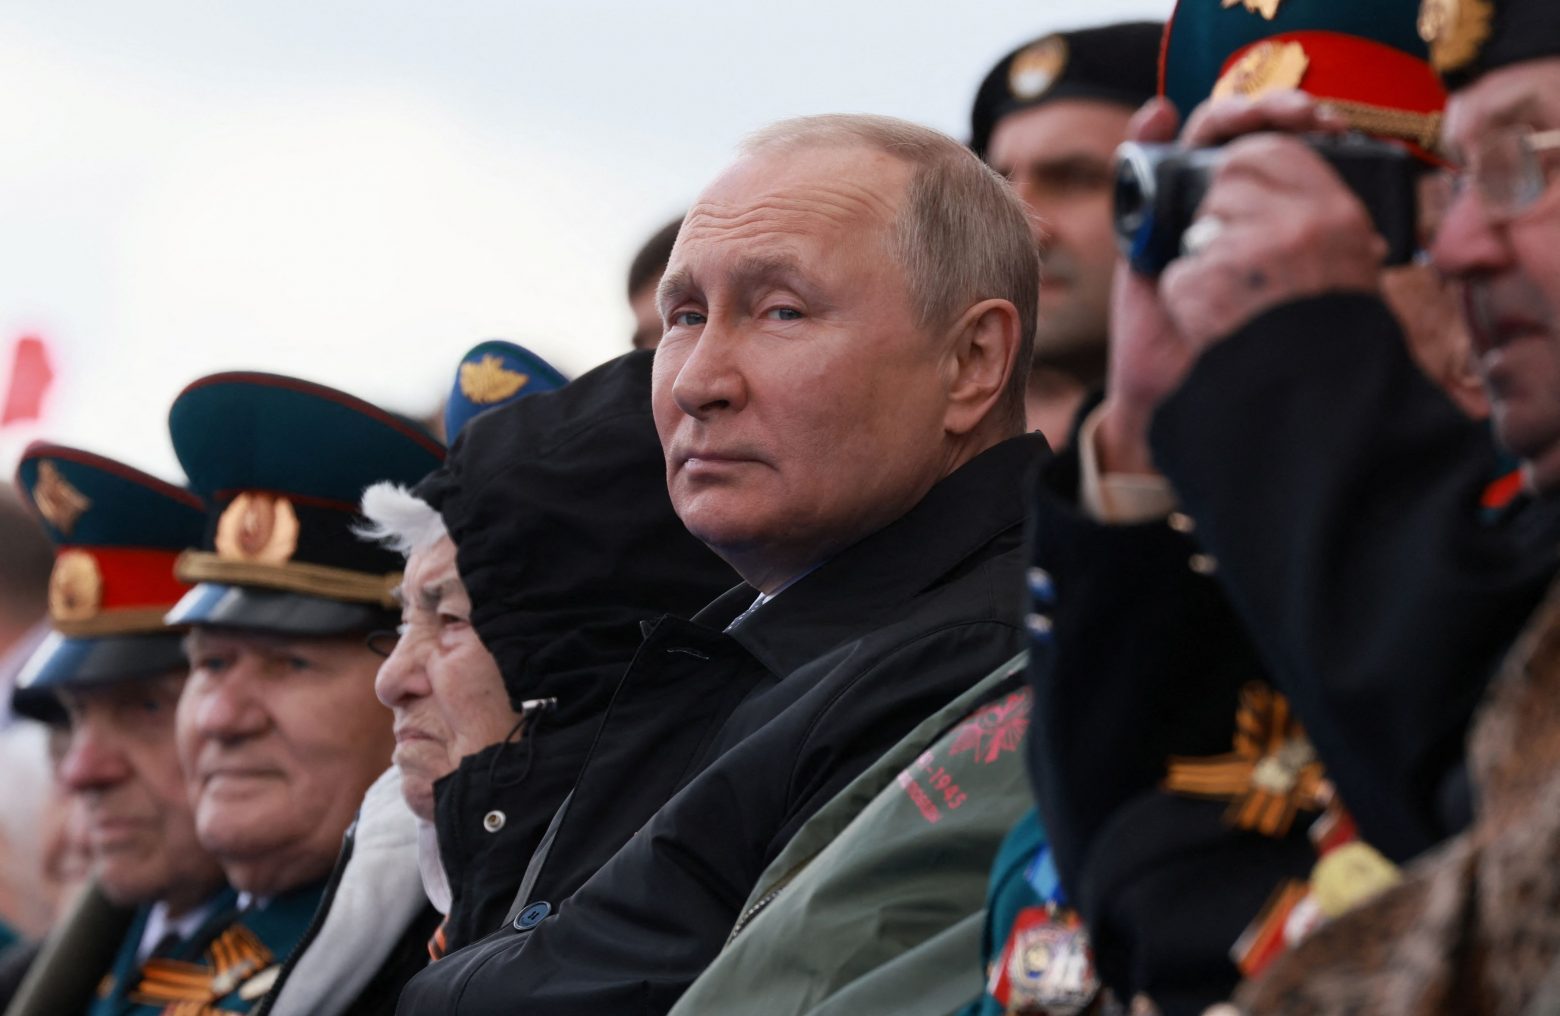 Ο Πούτιν στην Κόκκινη Πλατεία - Oύτε «παράφρων» ούτε θριαμβευτής